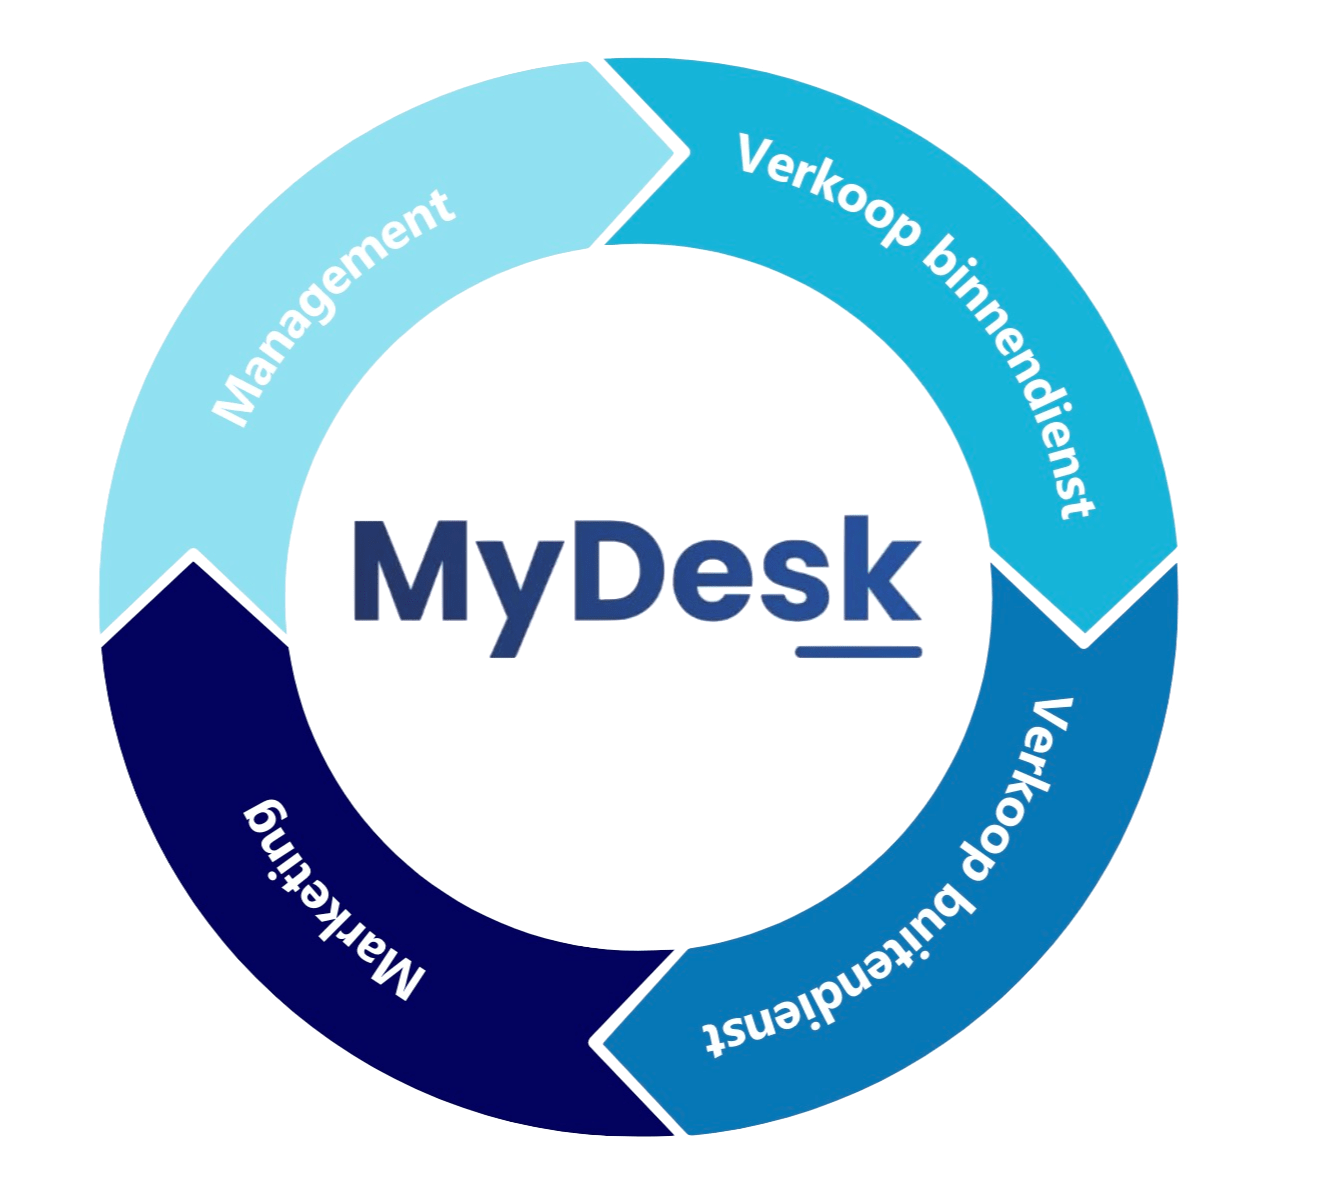 MyDesk-Afdelingssamenwerking